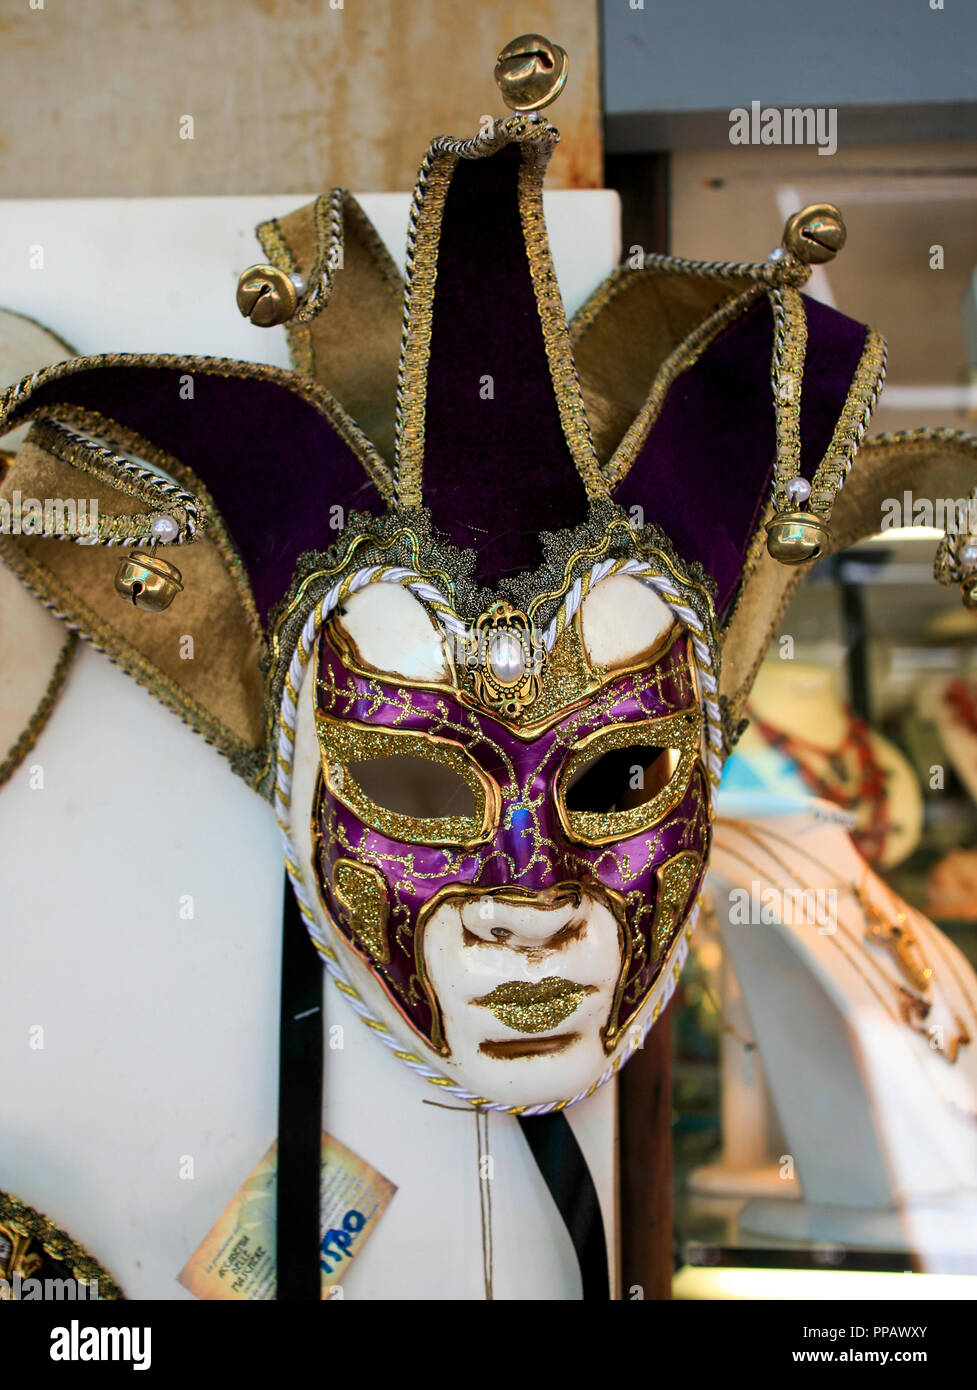 Venezianische Masken außerhalb des Shops in Venedig Stockfotografie - Alamy